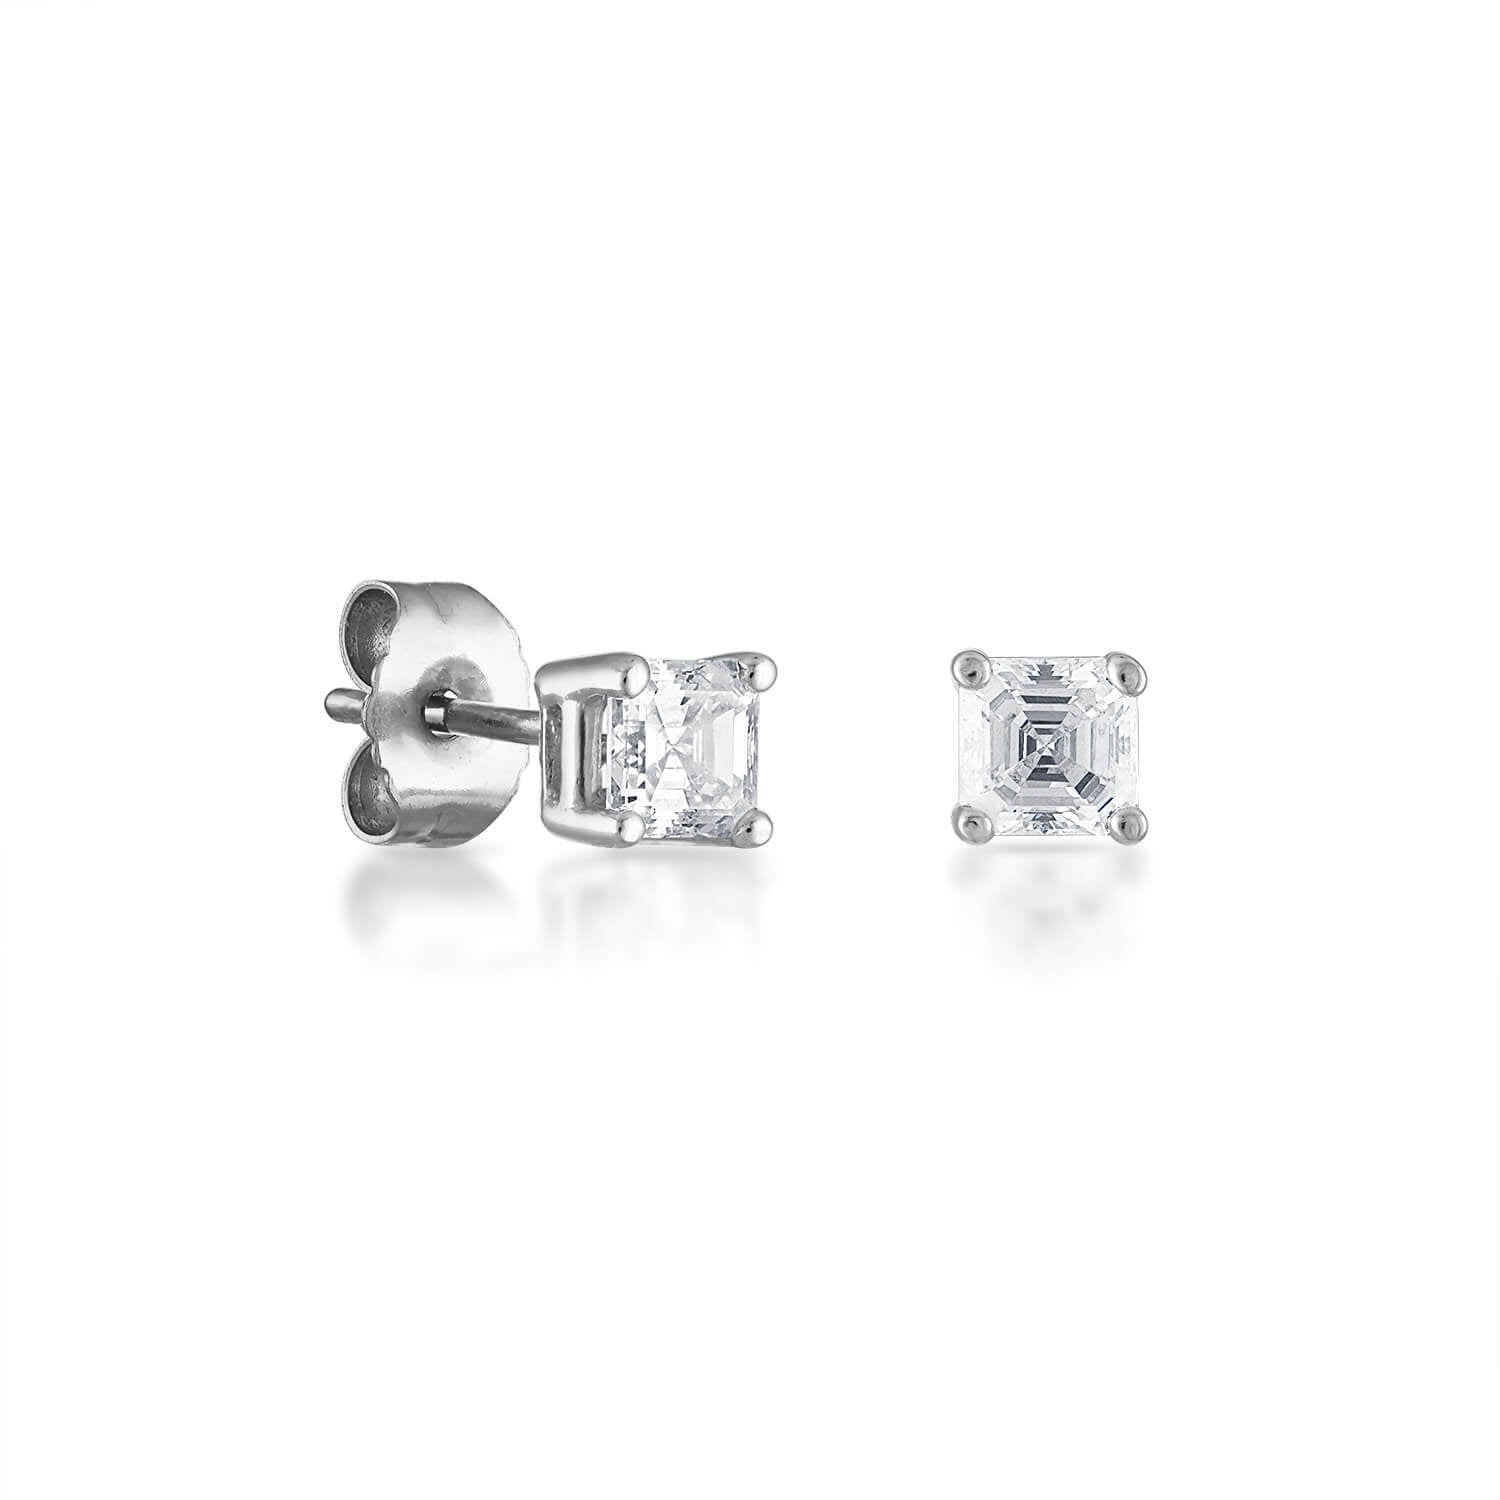 Update more than 129 asscher cut diamond stud earrings best